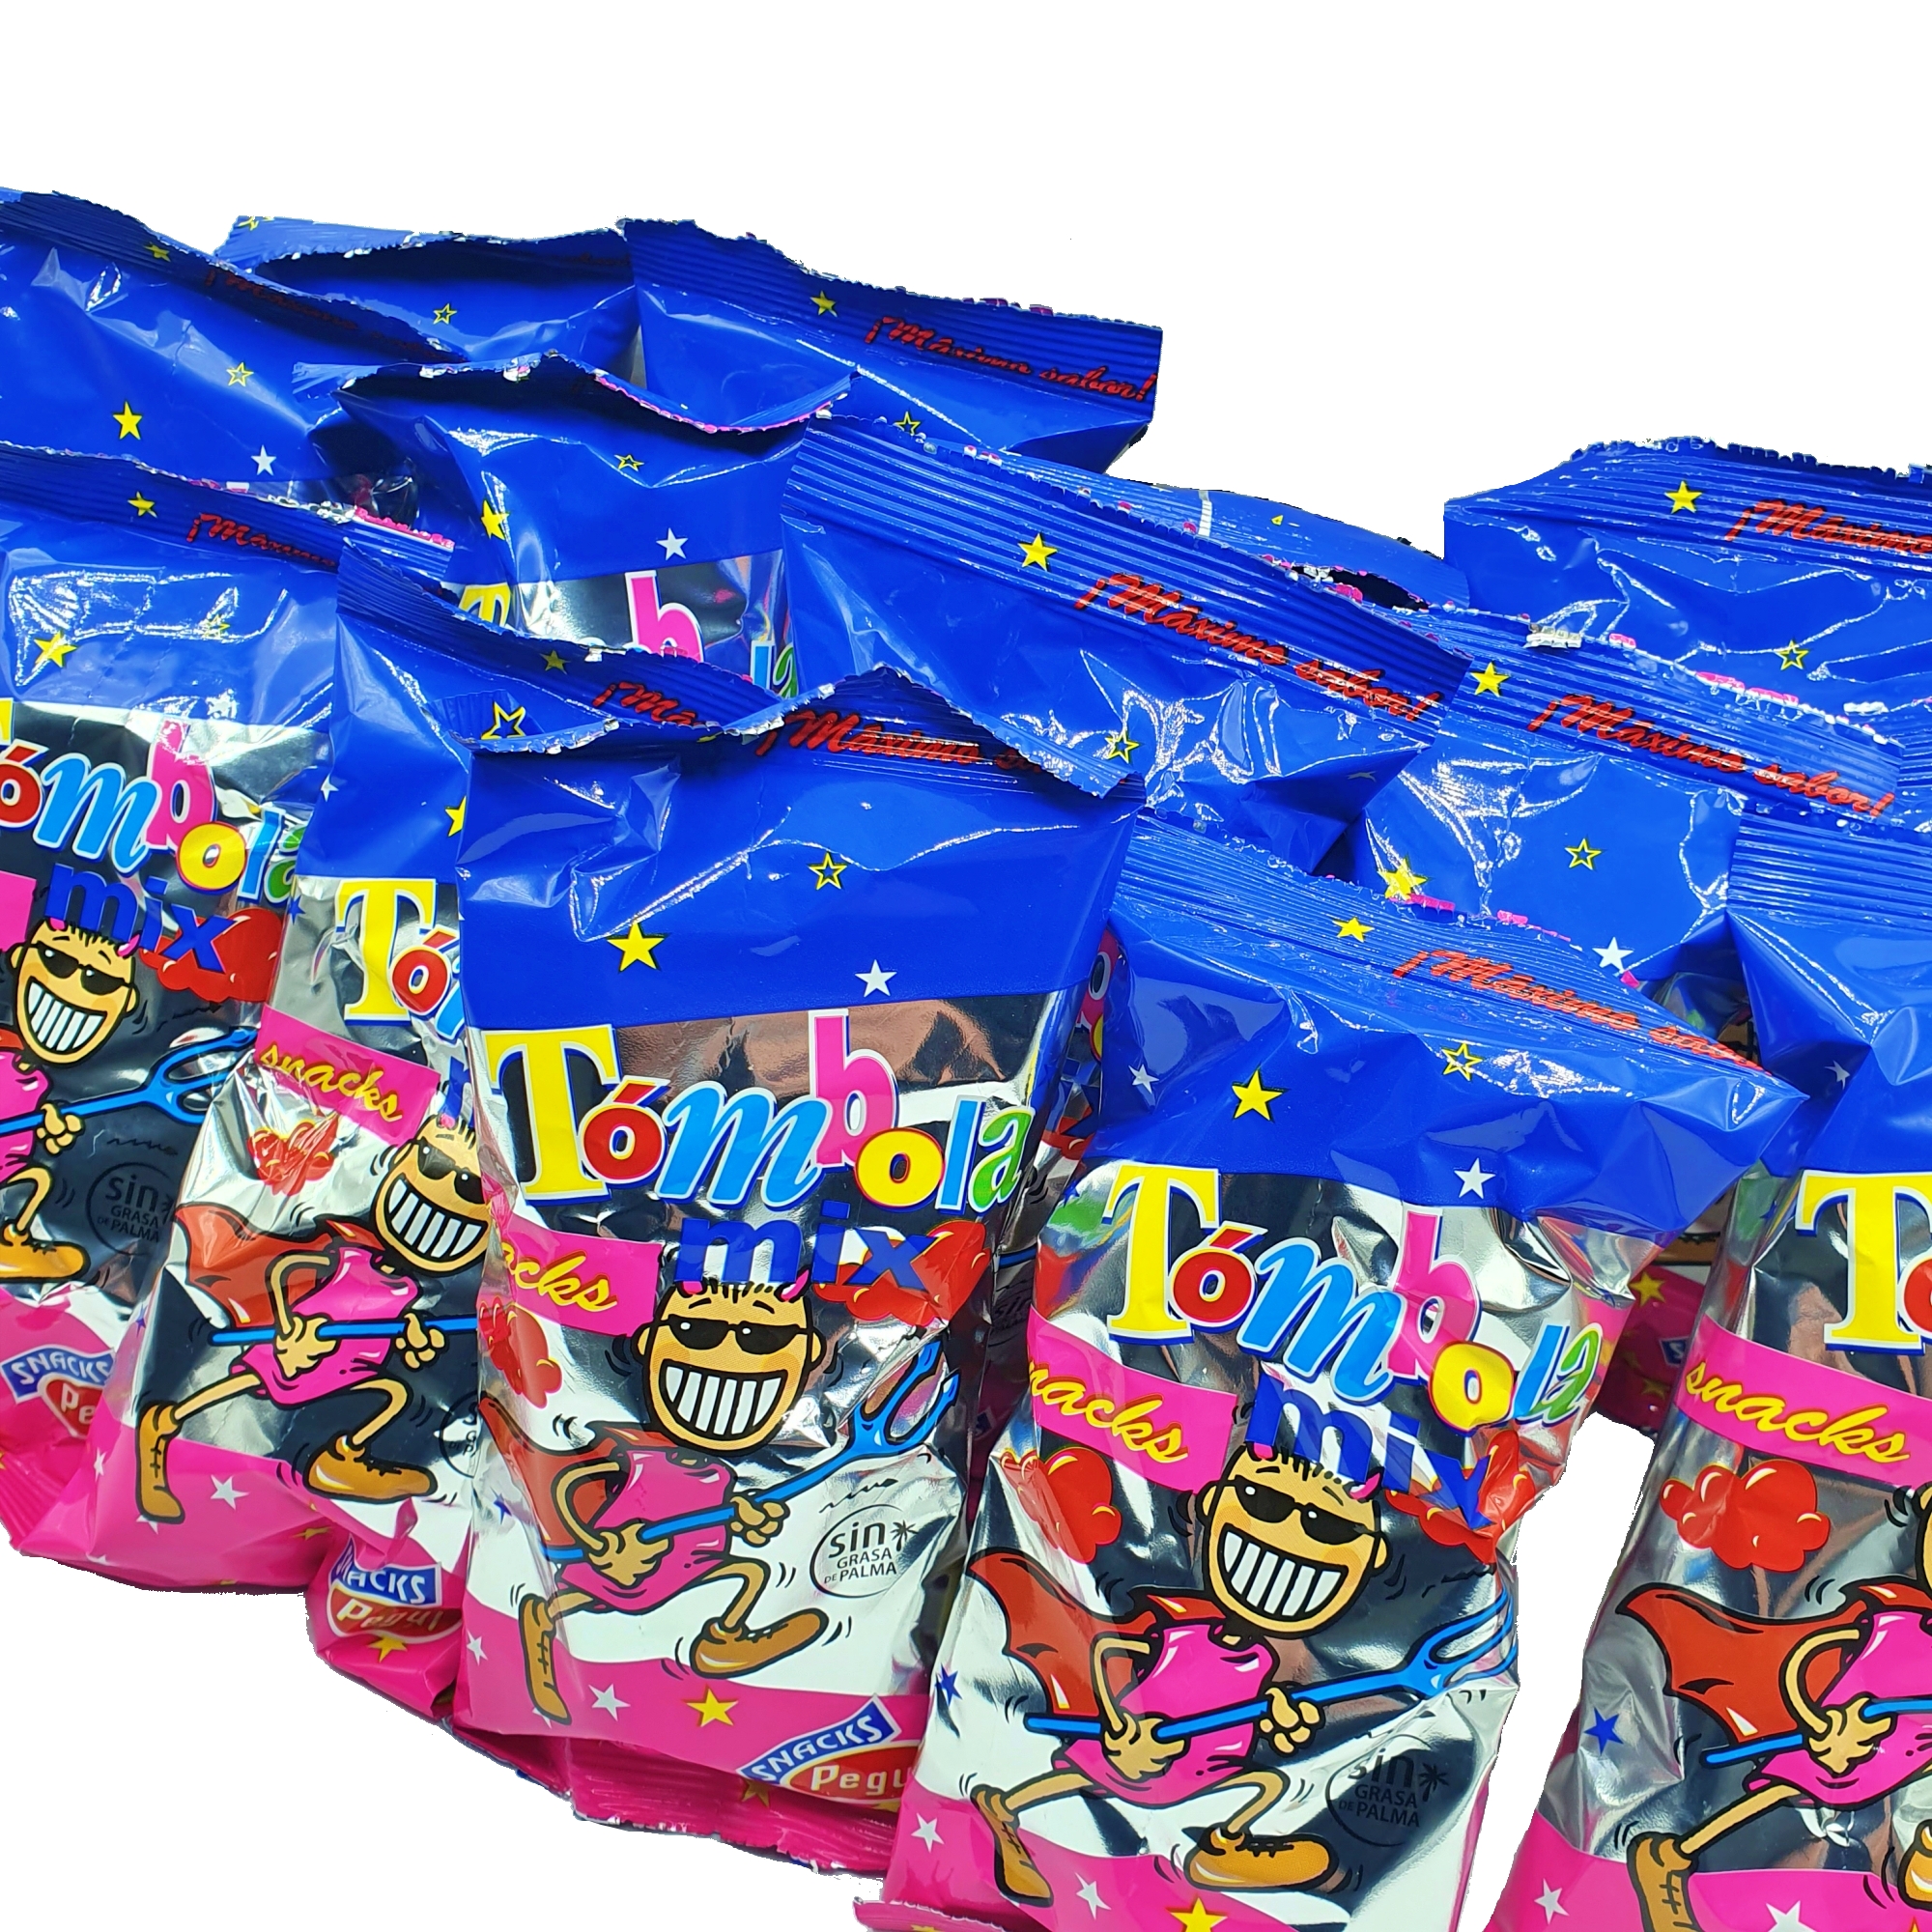 Pack Chuches Premium de 150 Unidades de Chuches para Piñatas, Cumpleaños,  Fiestas Infantiles. Golosinas de Marcas Premium y Envueltas. [IAMI]